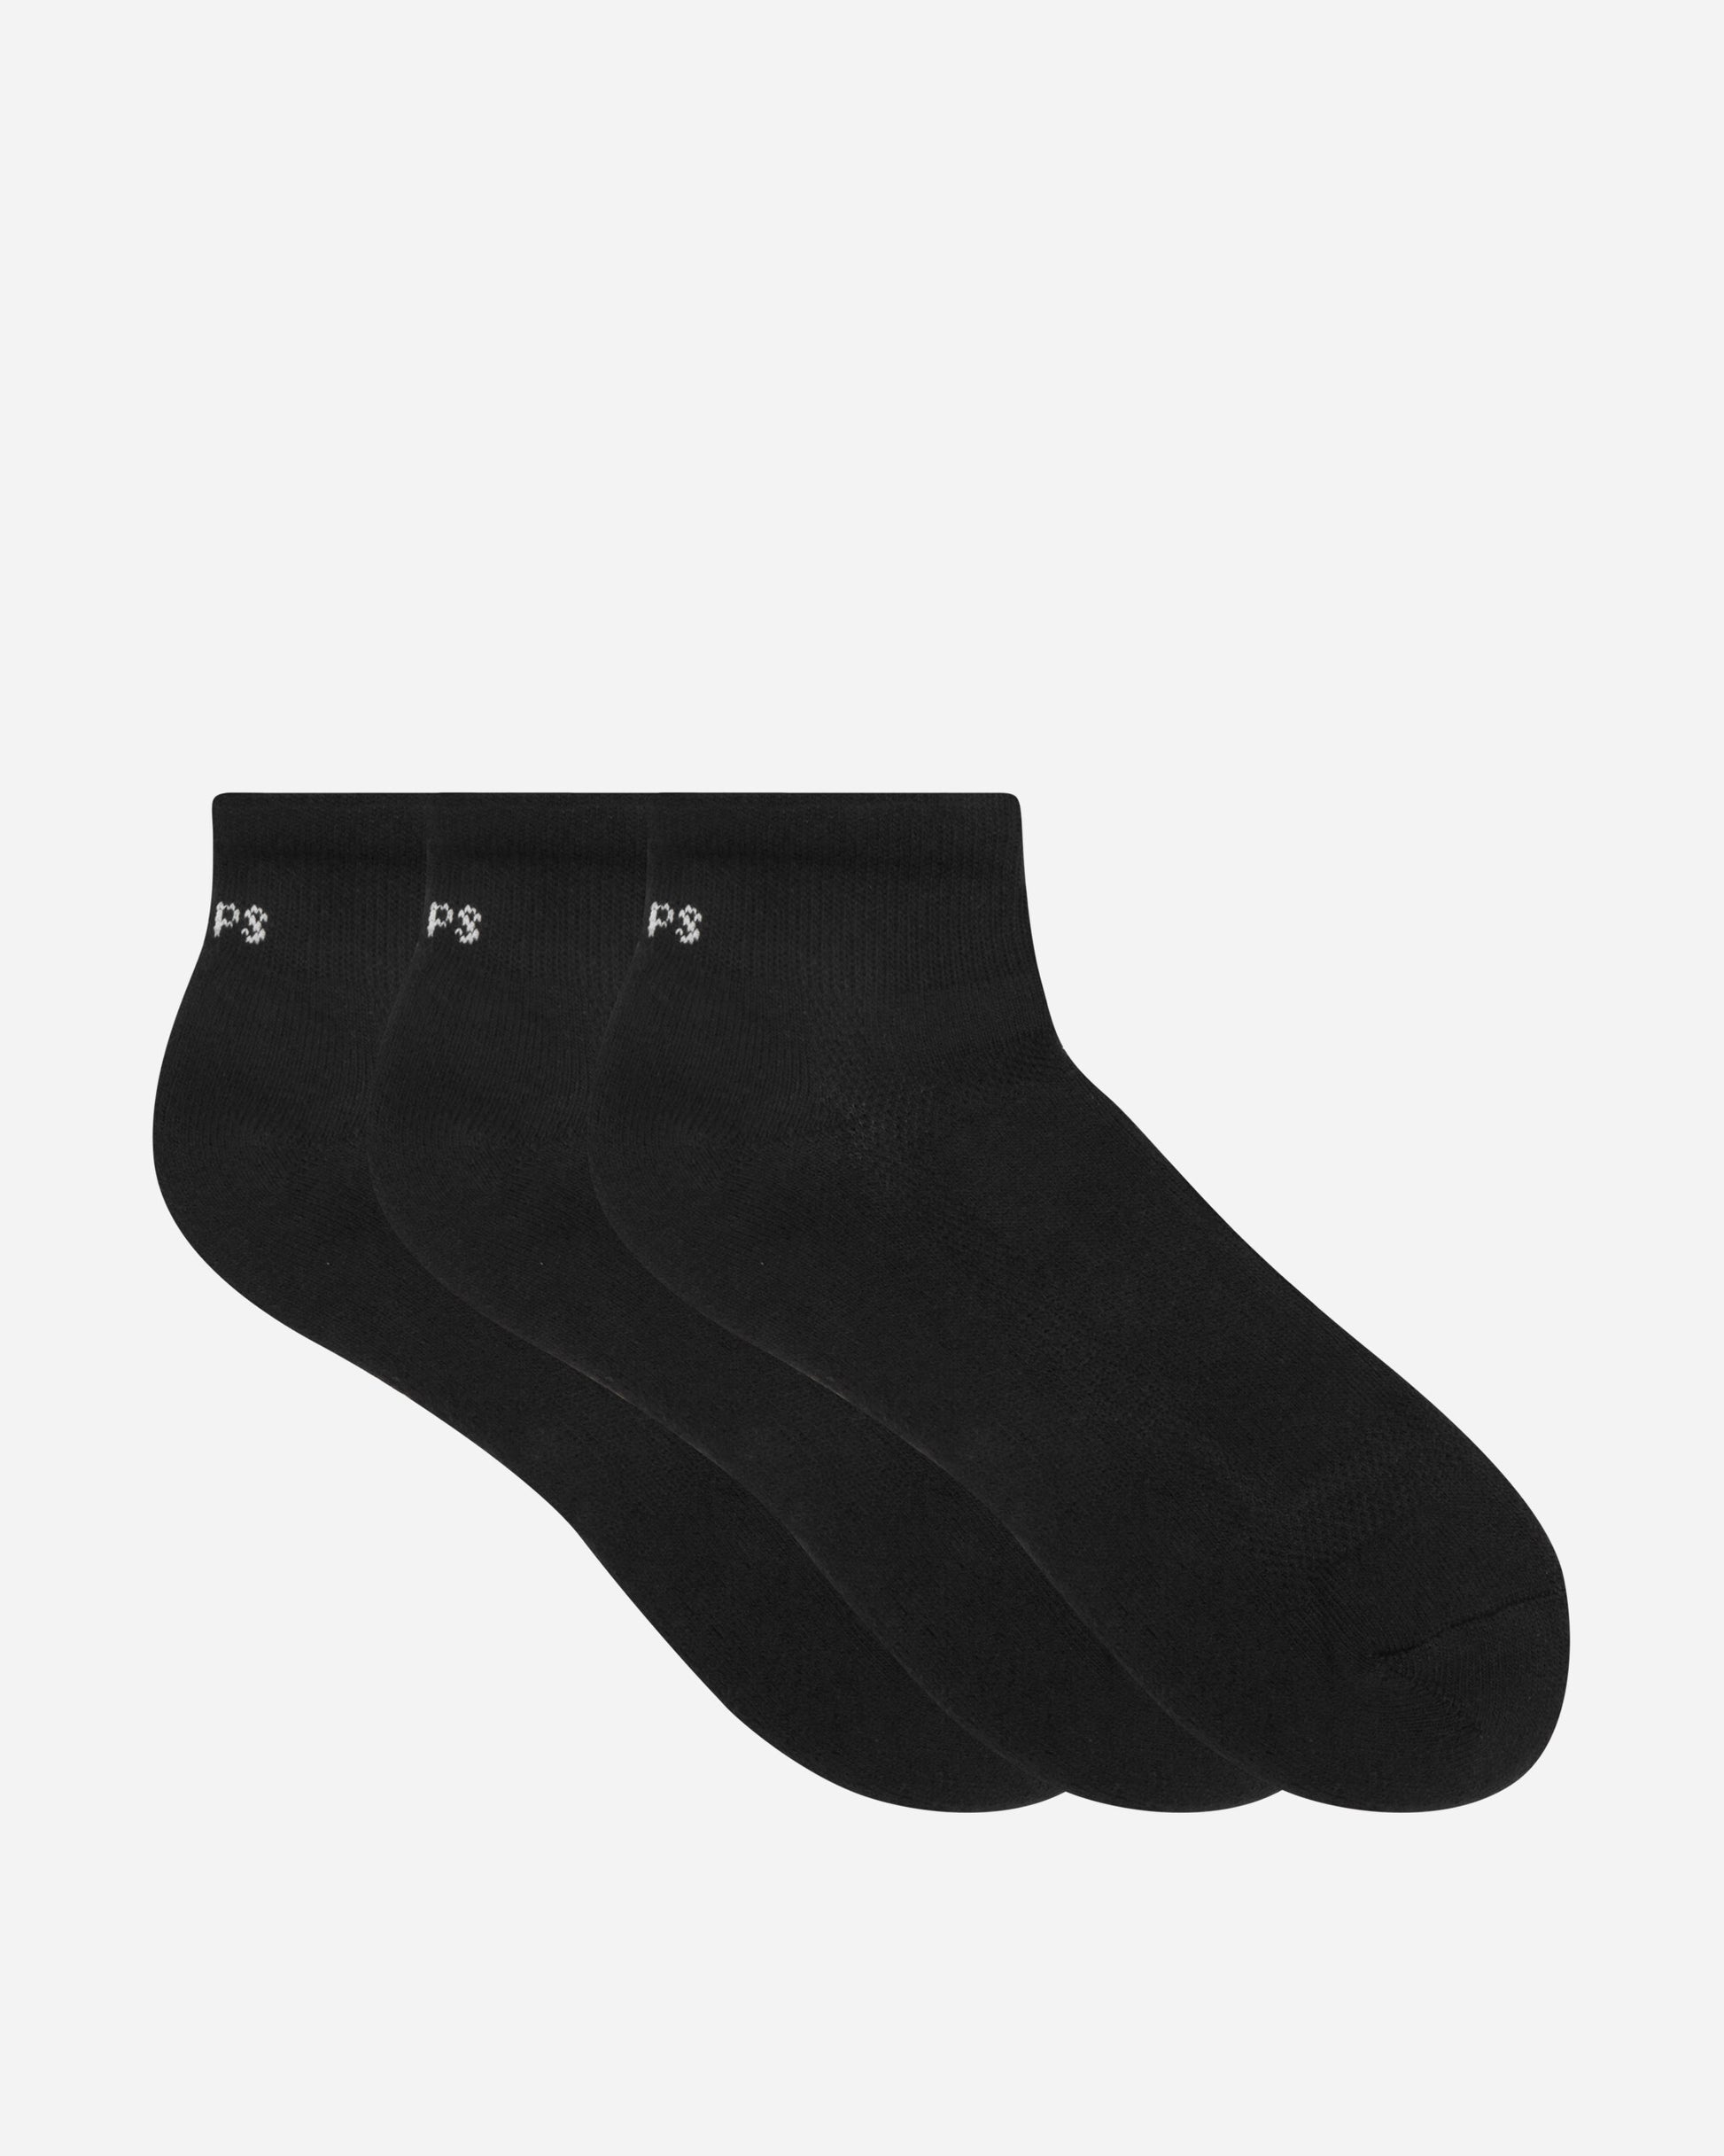 WTAPS Underwear 04 Black Underwear Socks 232MYDT-UWM04 BK